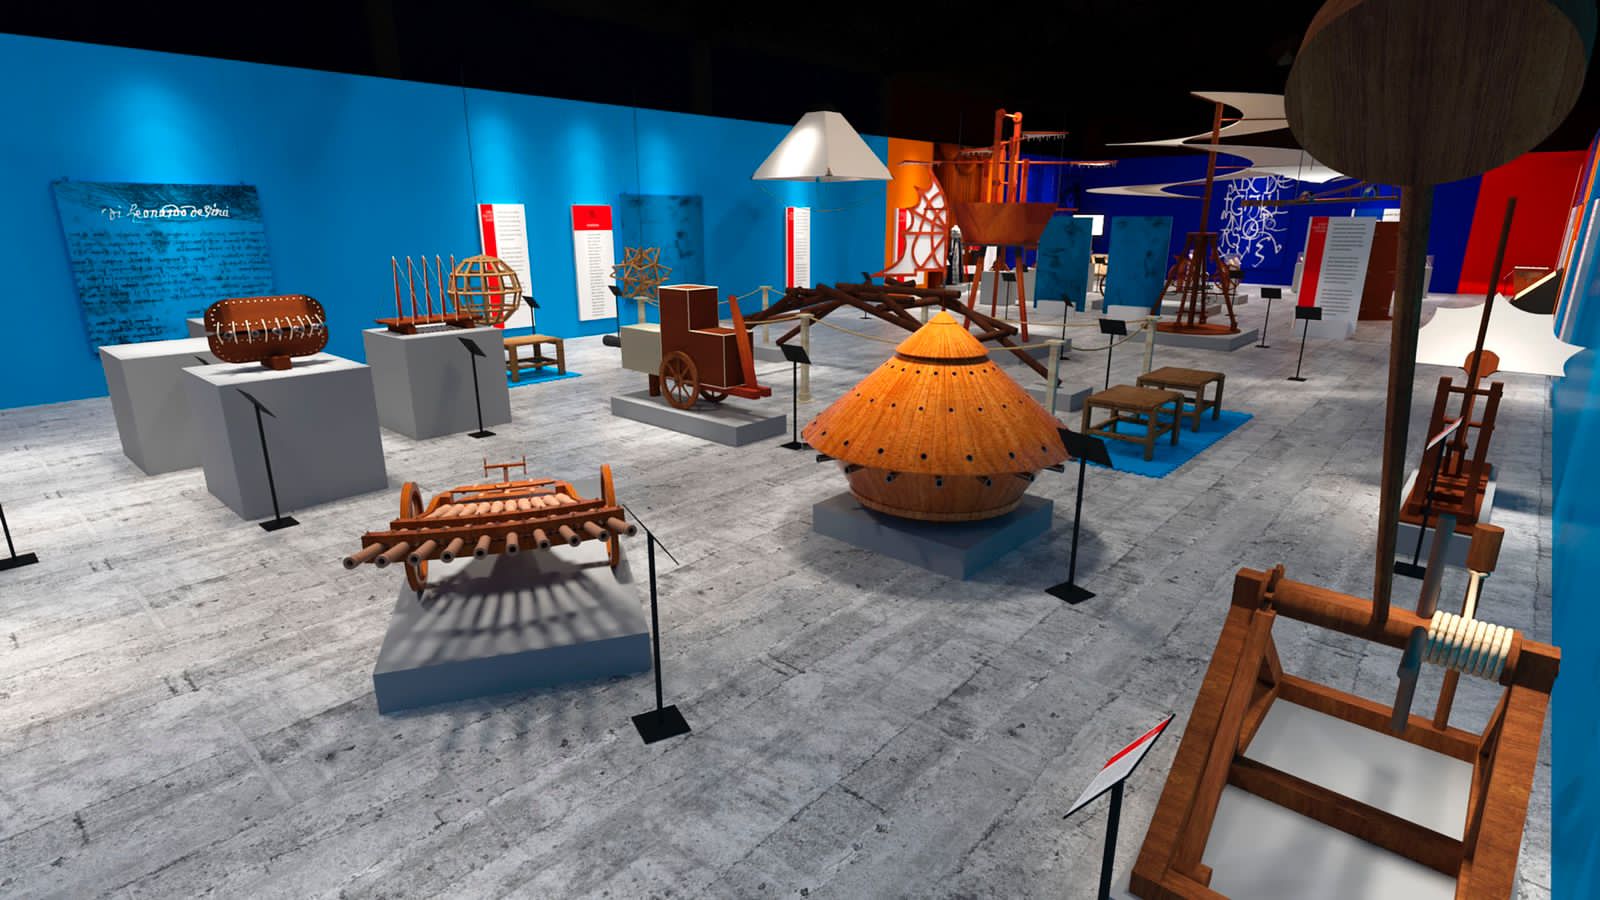 Foto da reprodução da sala de exposição em 3D com paredes coloridas e esculturas espalhadas ao redor da sala